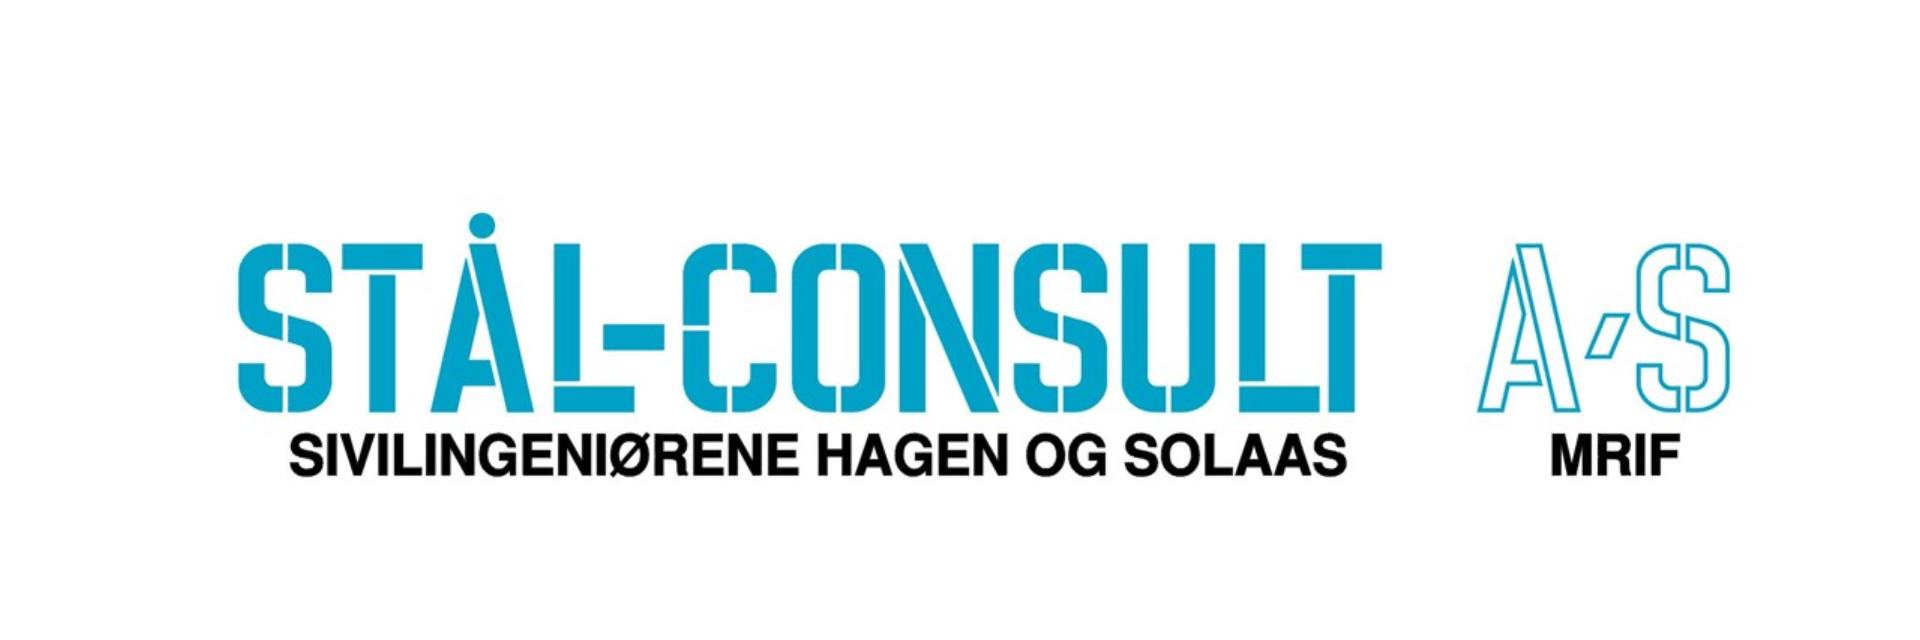 Norsk Stål kjøper 50% av aksjene i Stål-Consult AS